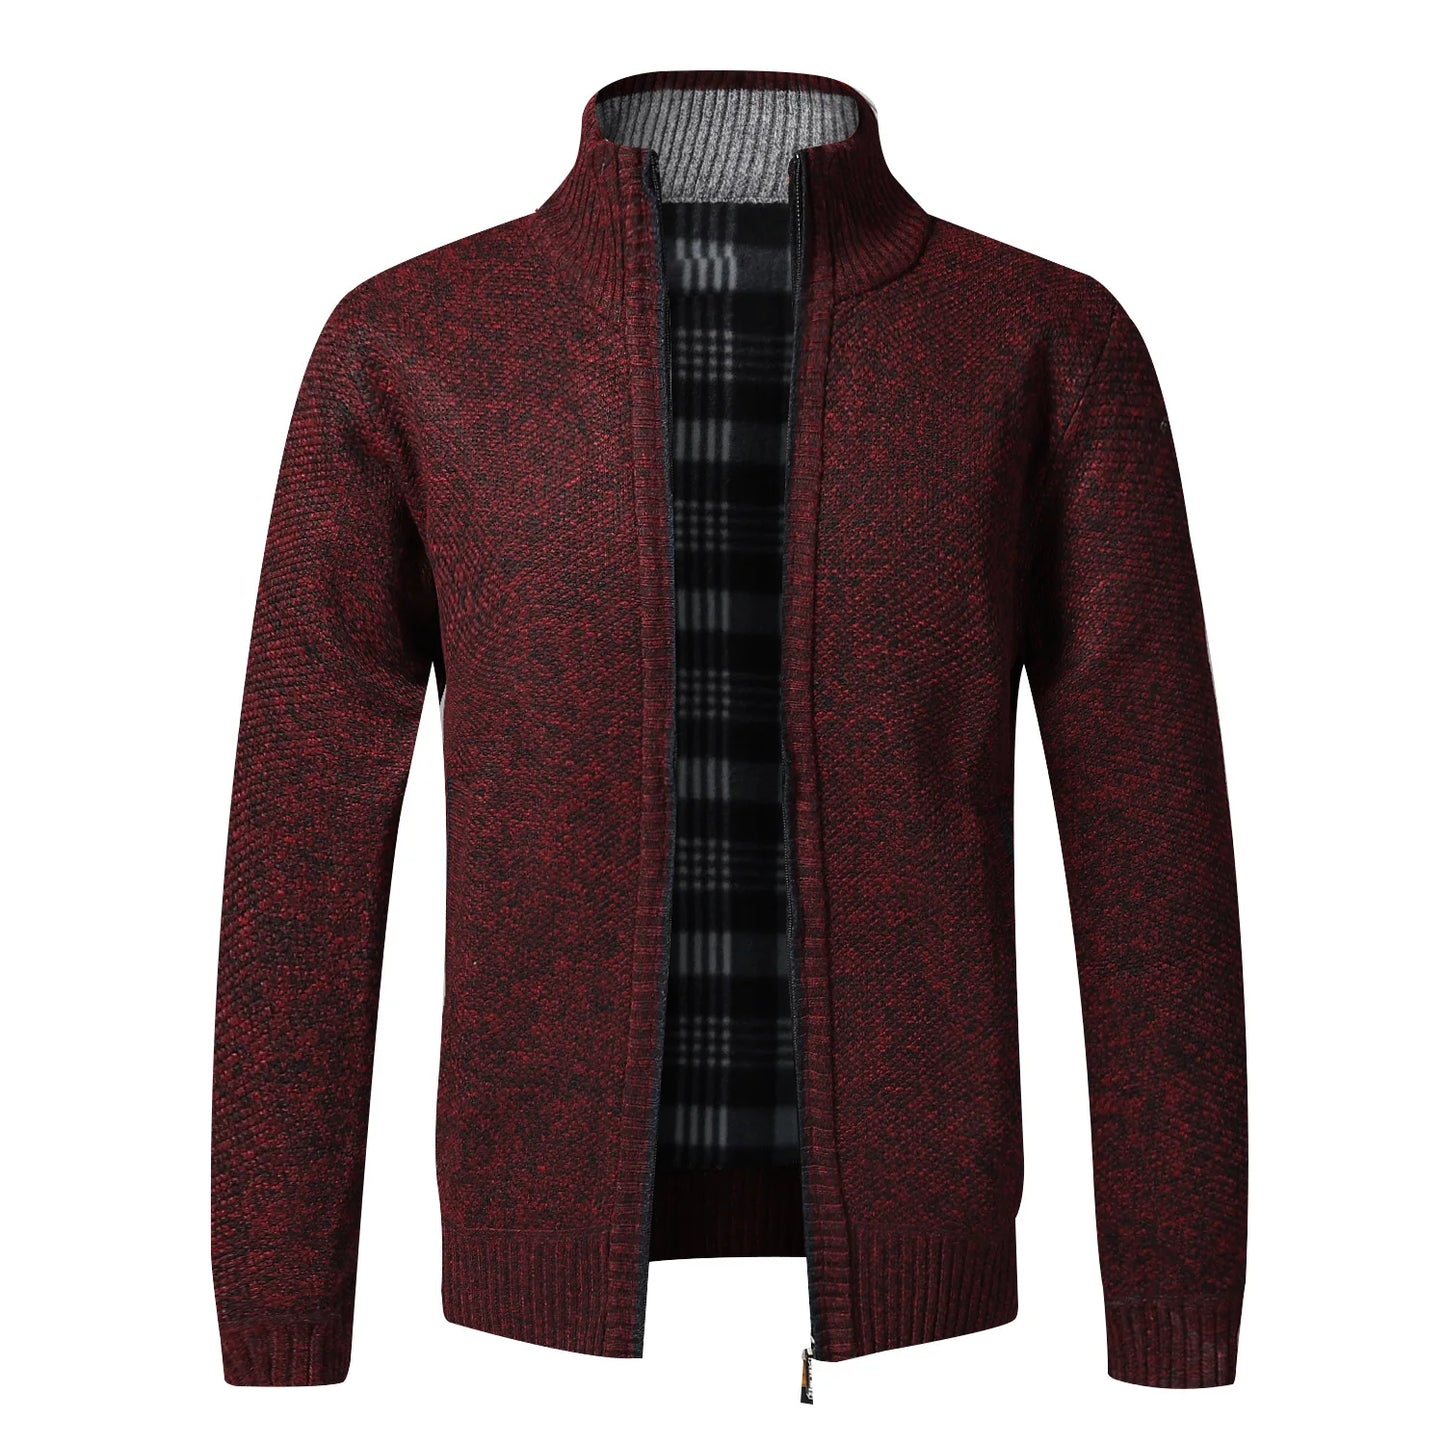 TEEK - Warm Knitted Zipper Sweater Jacket JACKET theteekdotcom red US XS | Tag M 